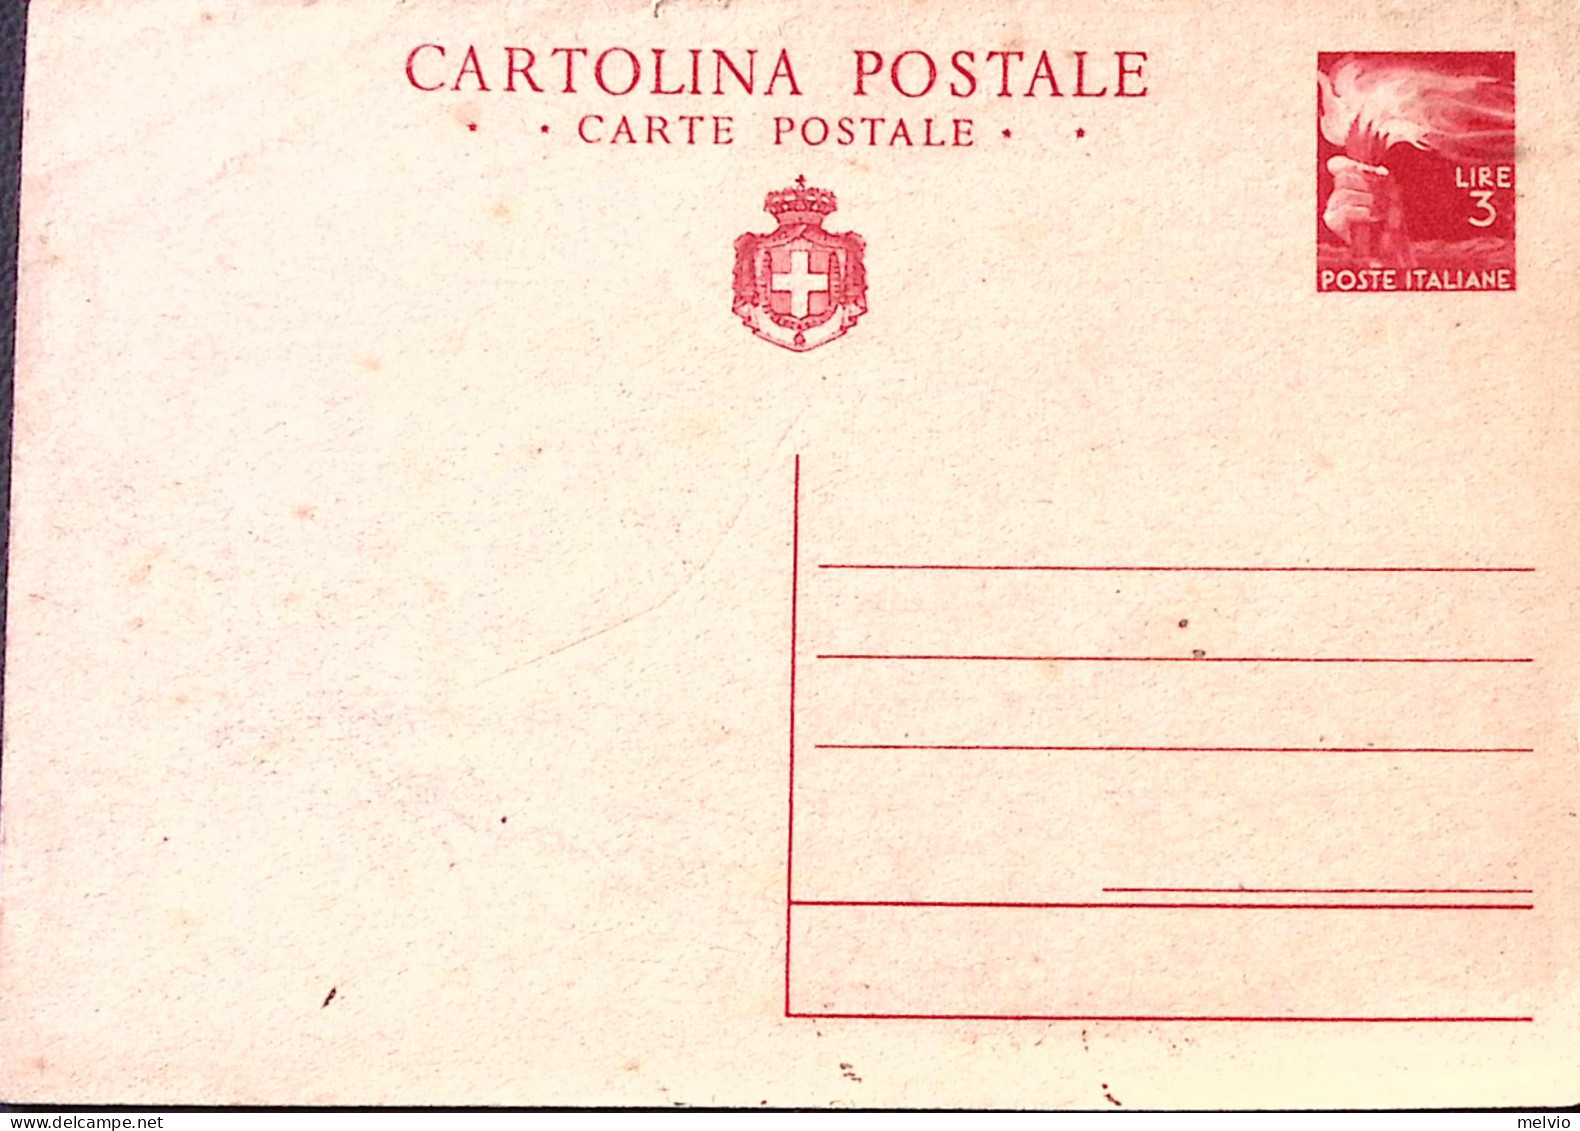 1945-Cartolina Postale Democratica Con Stemma Lire 3 (C128) Nuova - Stamped Stationery